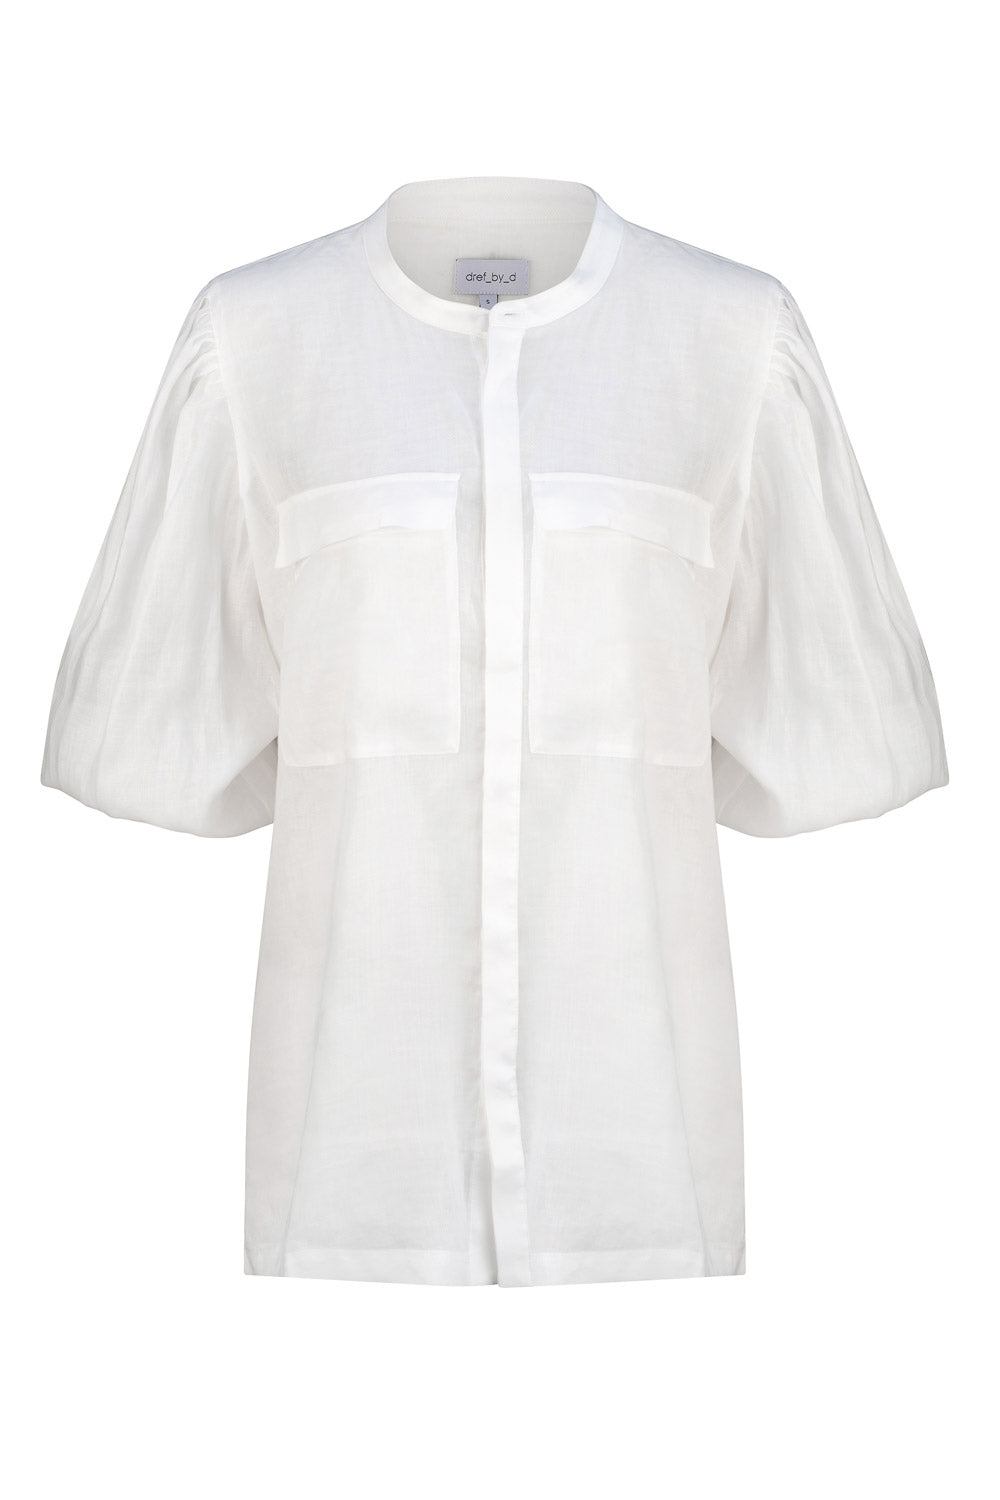 Dref By D Women's White Santorini Relaxed Shirt - Ivory